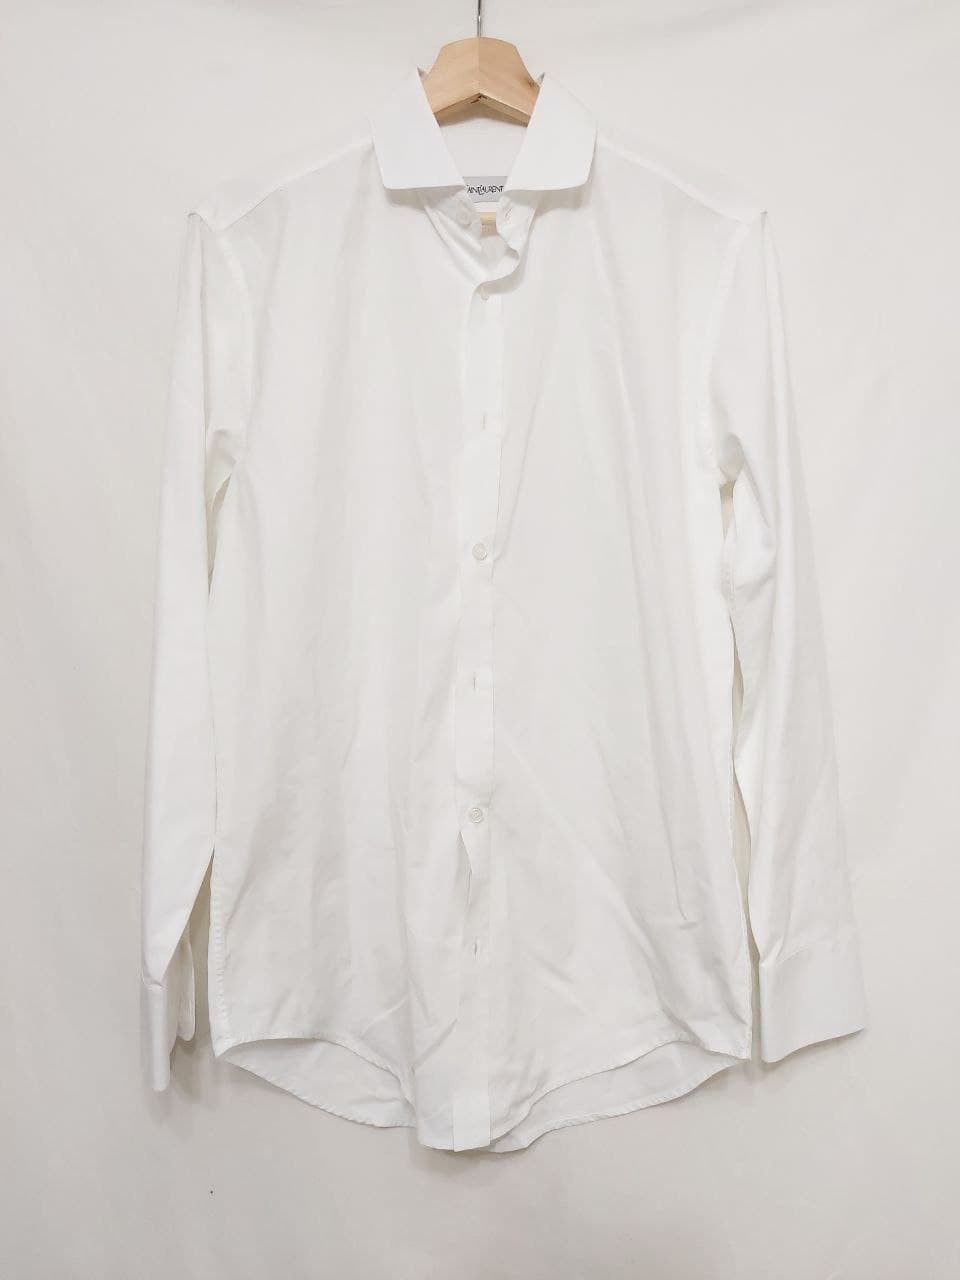 Yves Saint Laurent Shirt Size US S / EU 44-46 / 1 - 1 Preview